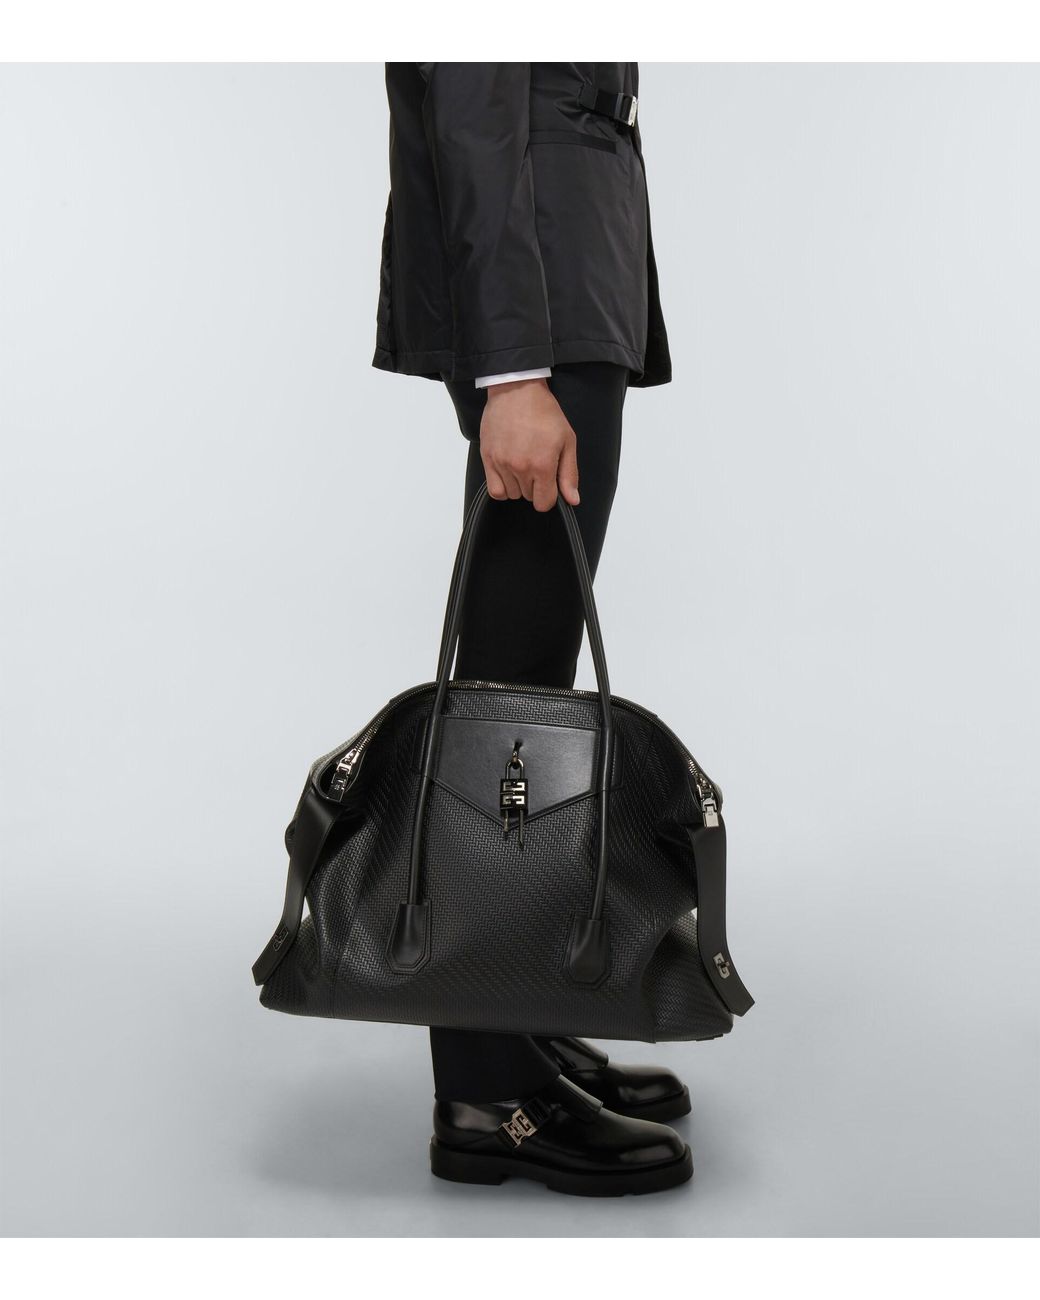 Givenchy Antigona Large Soft Leather Bag